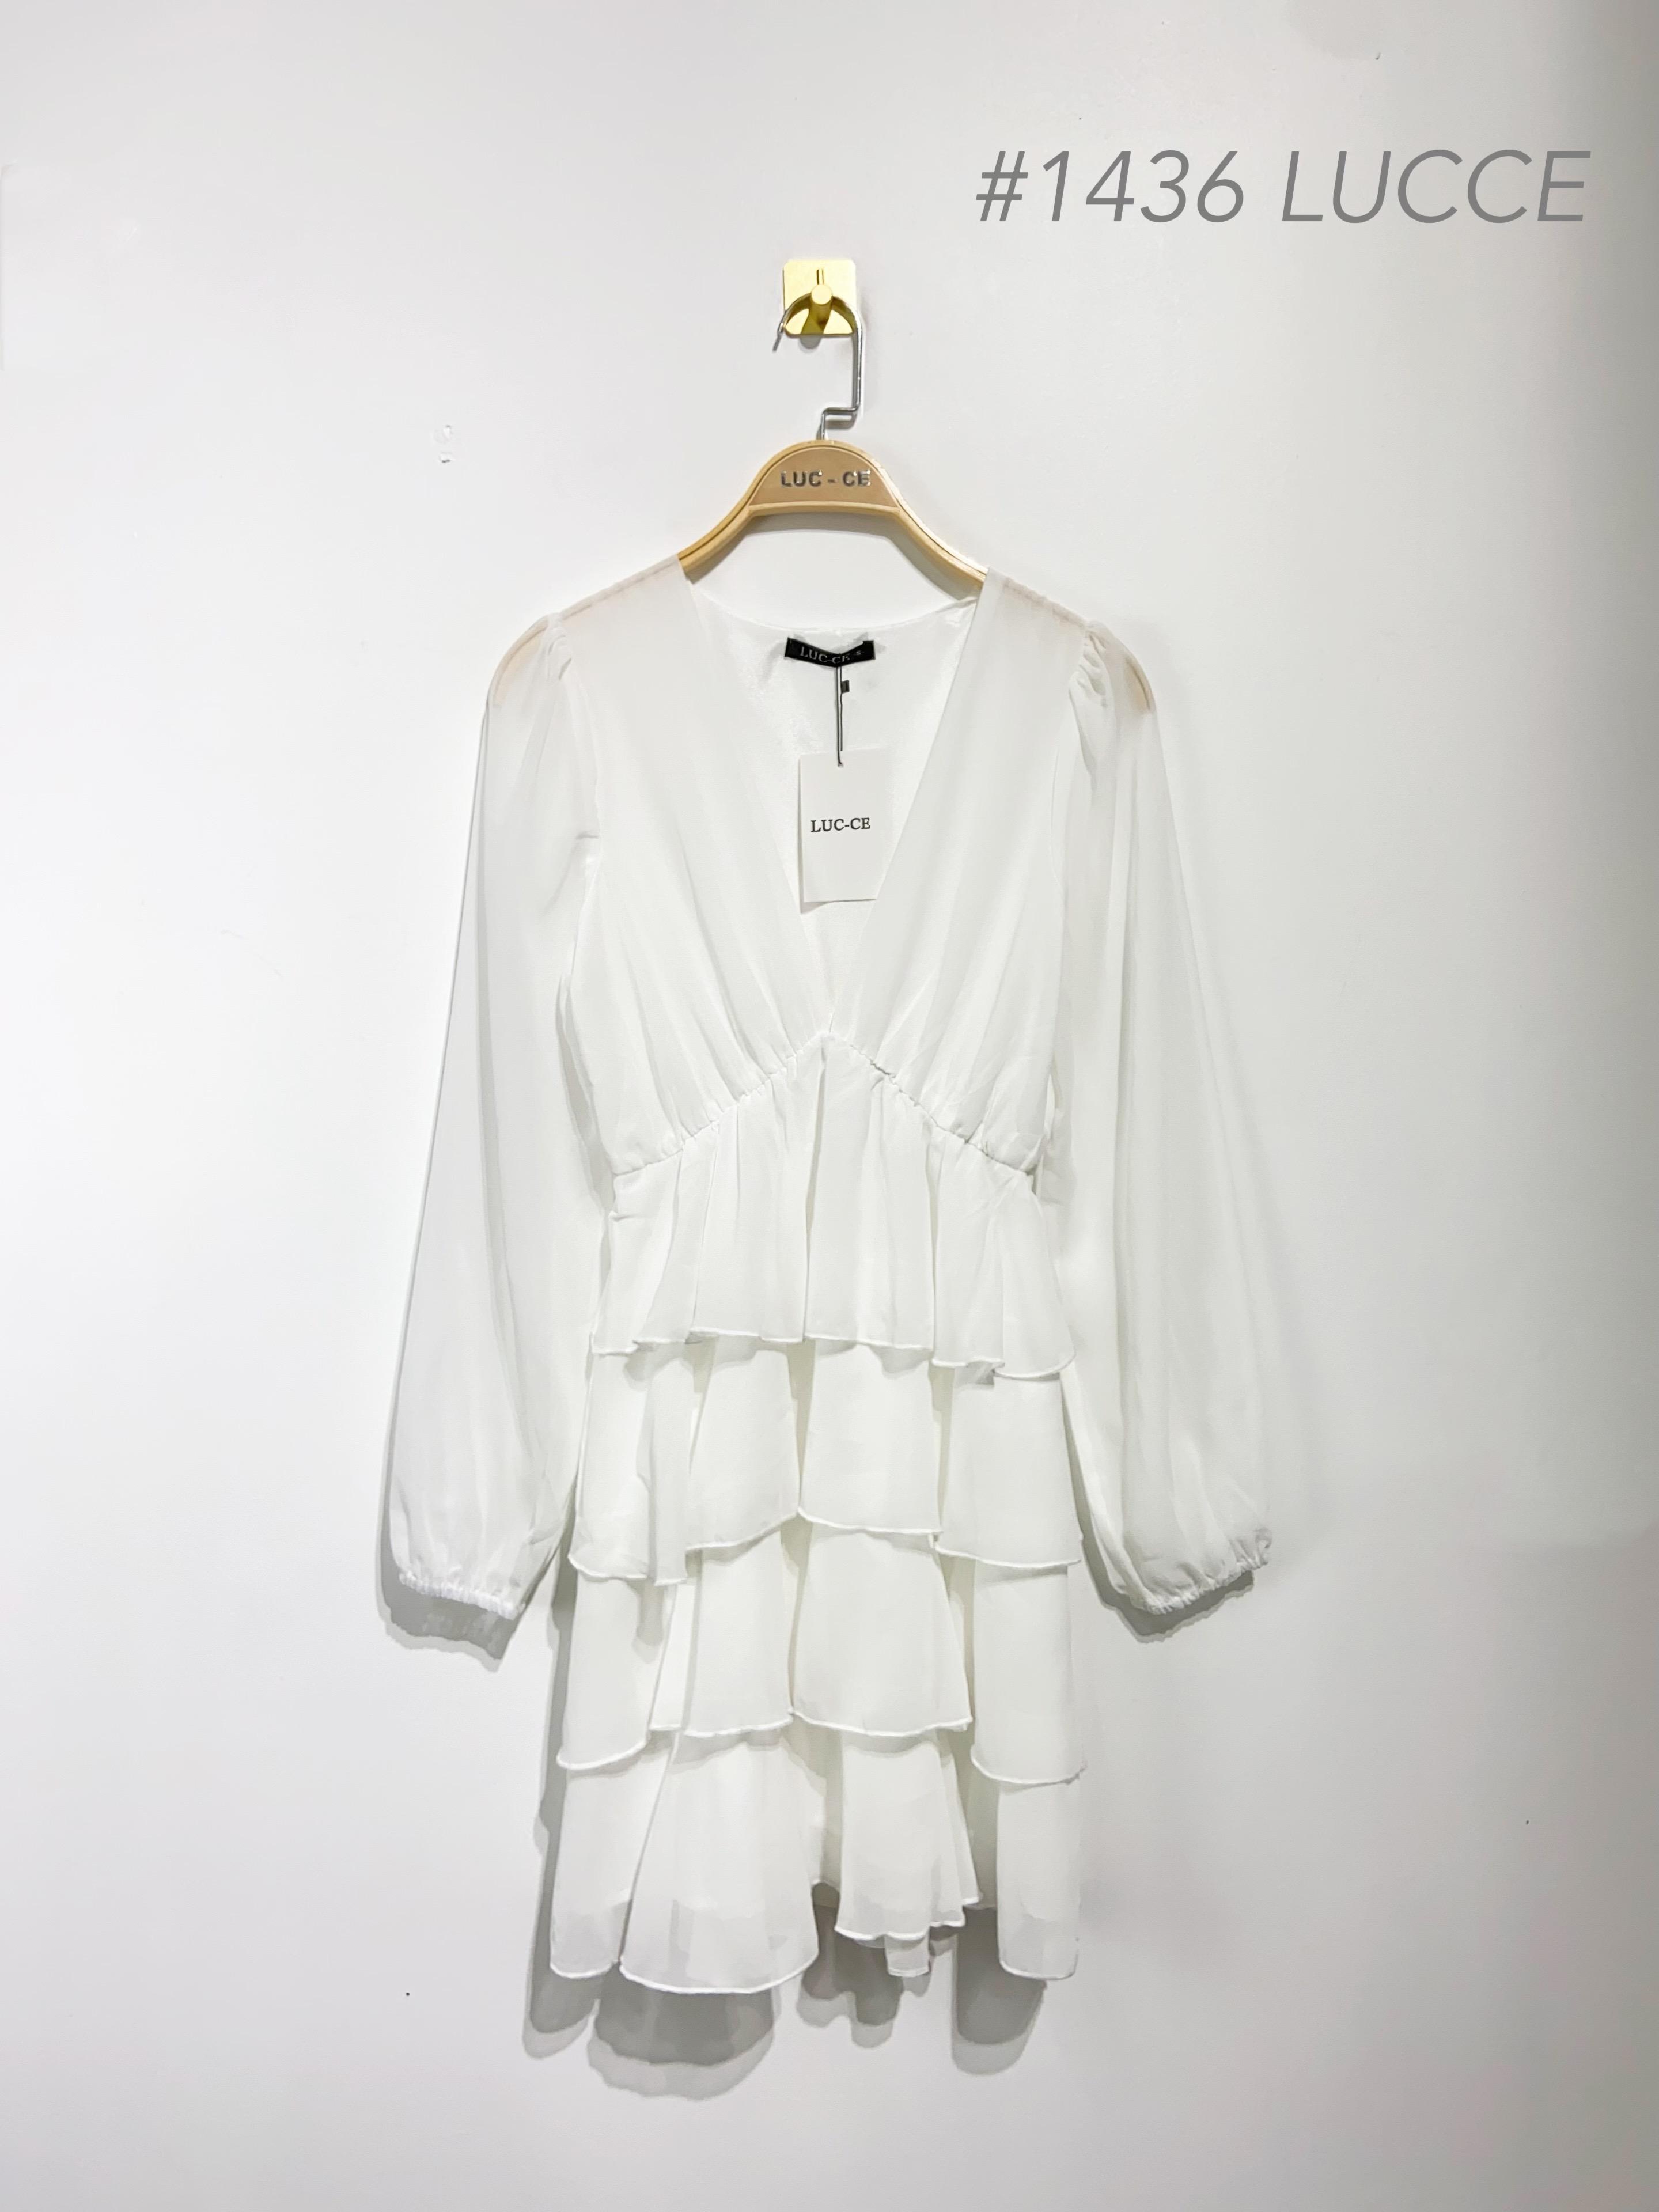 Short dresses Women White Luc-ce 1436 #c Efashion Paris